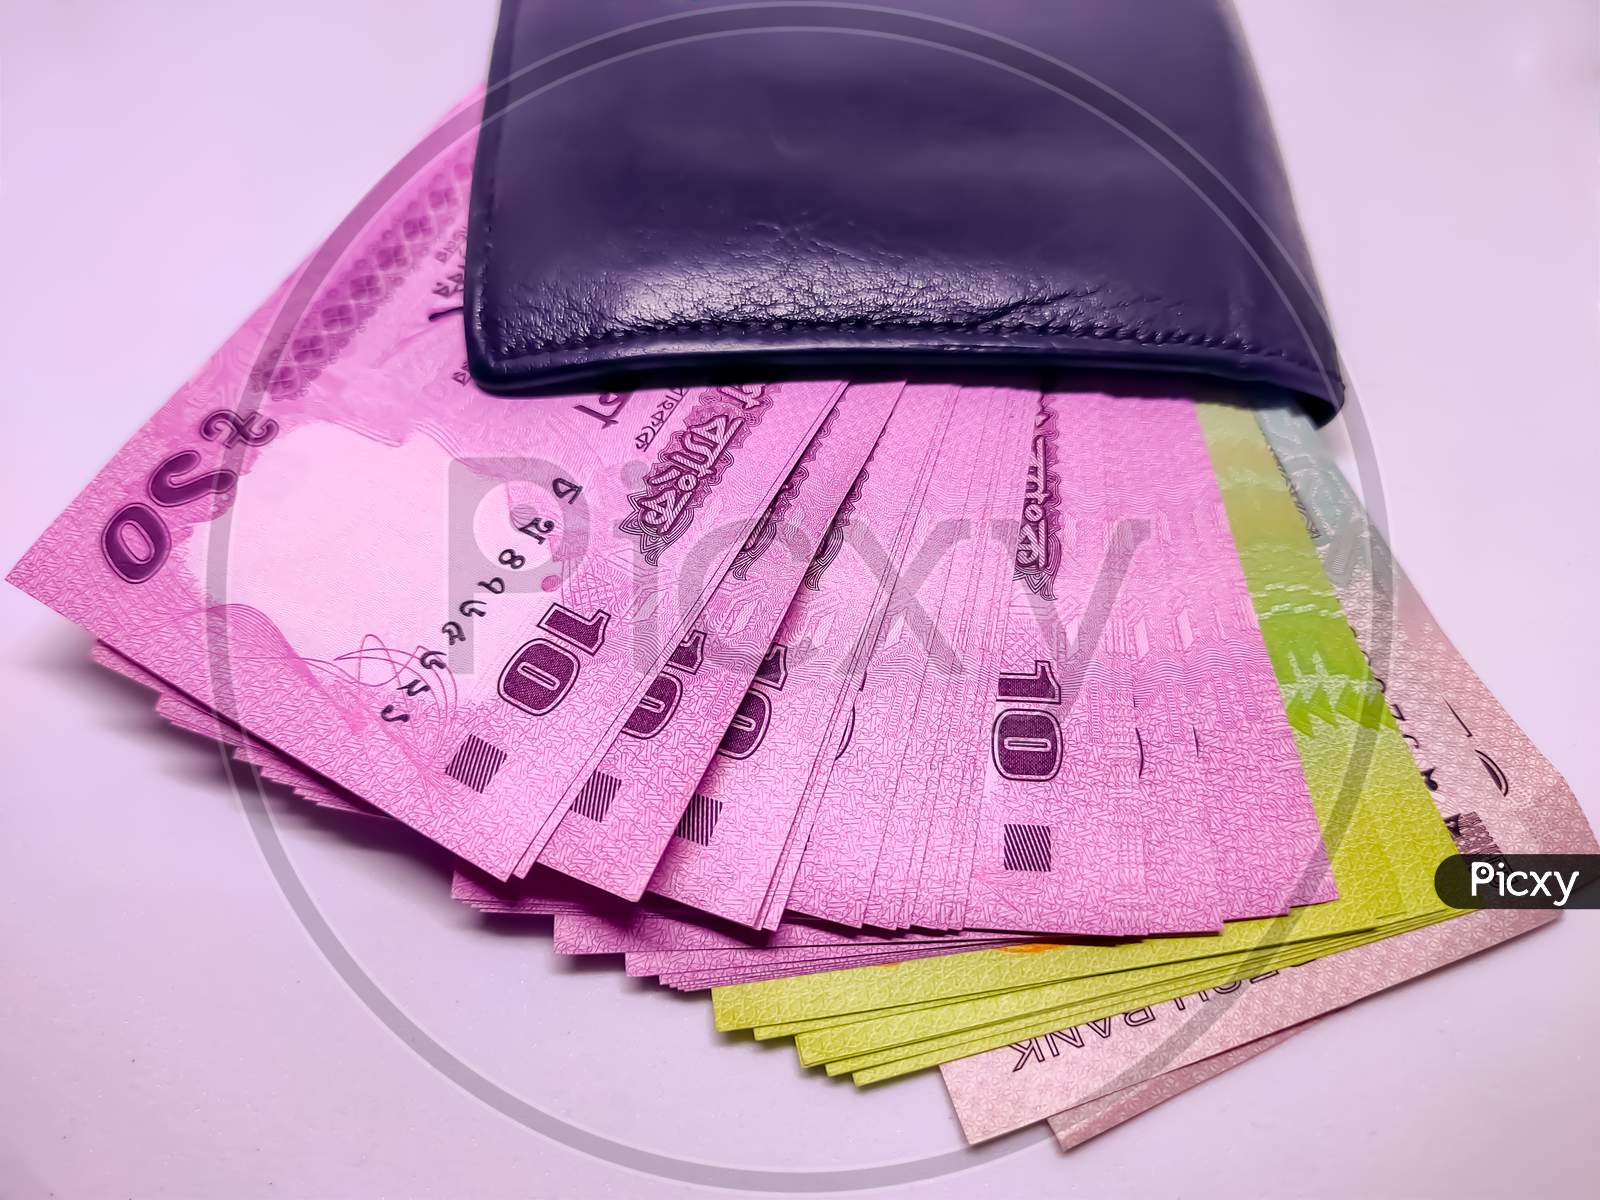 Black Wallet Full Of Bangladeshi Bank Notes.